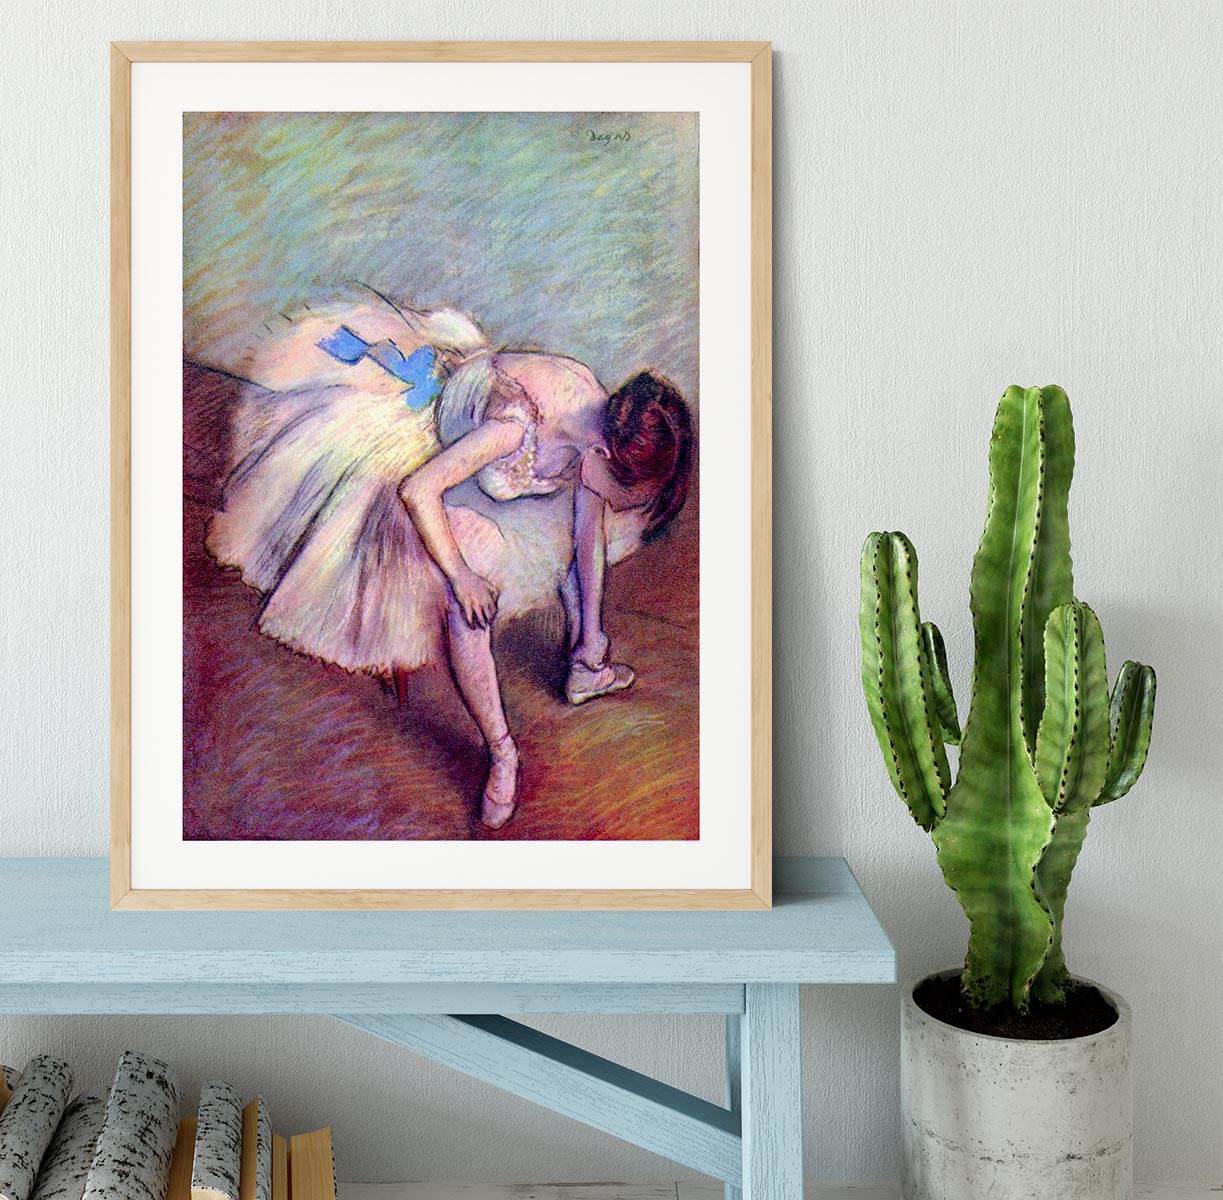 Dancer 2 by Degas Framed Print - Canvas Art Rocks - 3